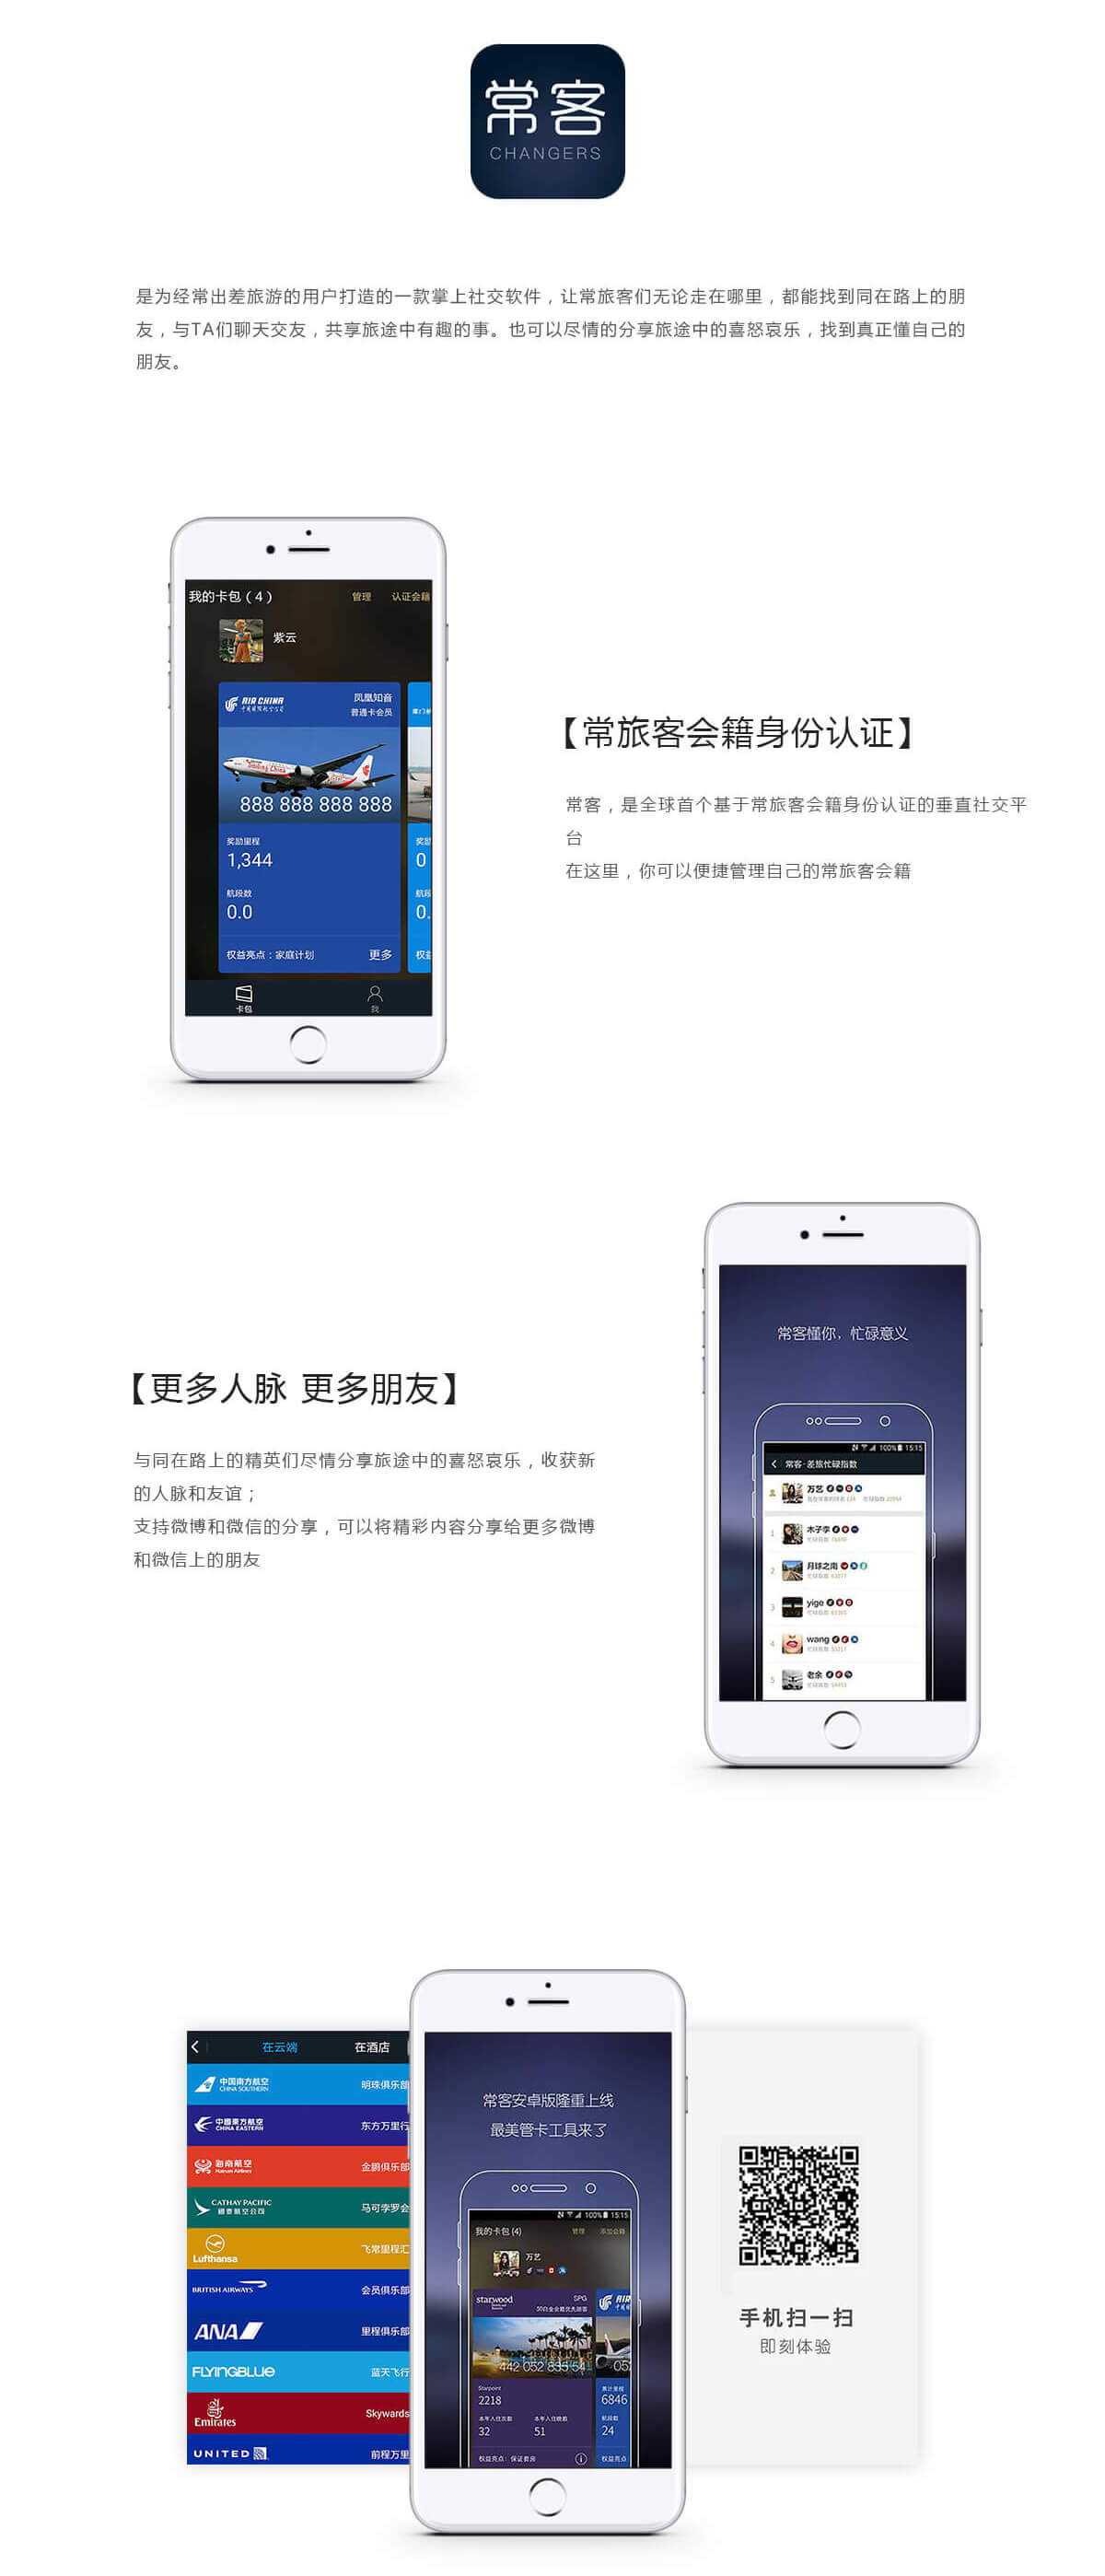 广州APP开发,常客旅游APP开发,垂直社交APP开发